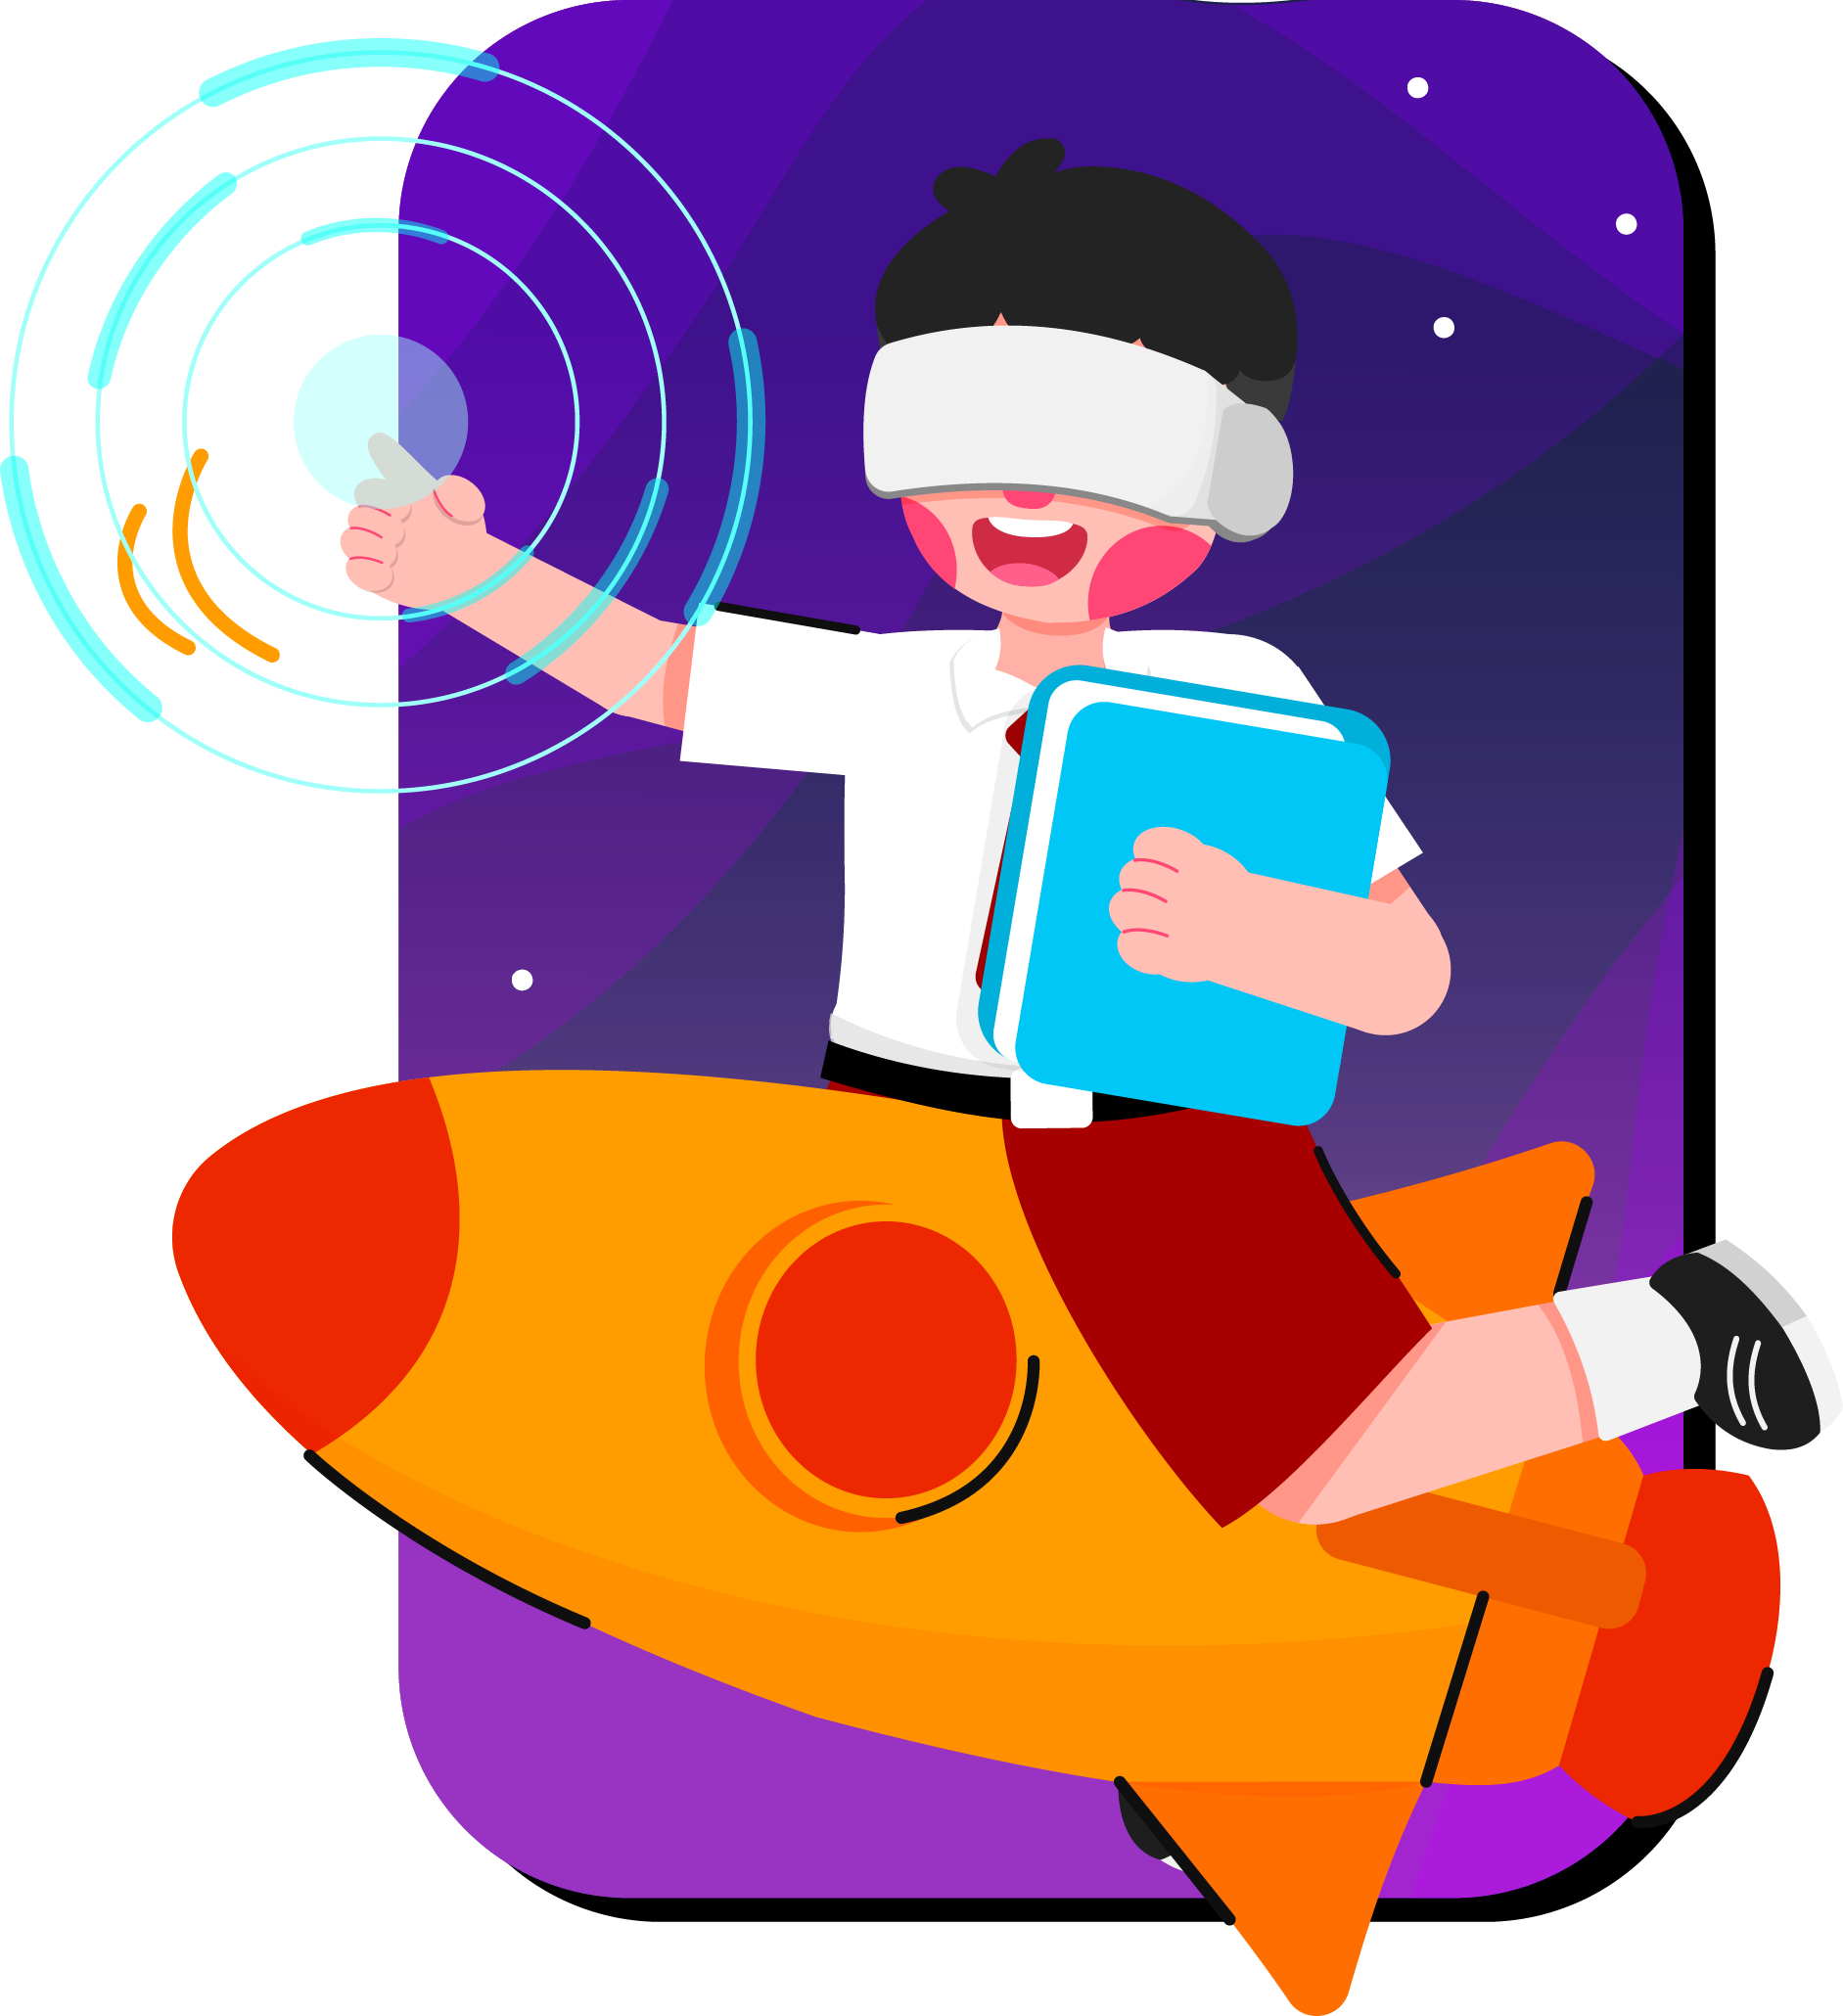 ilustração de um menino em cima de um foguete tocando no espaço.